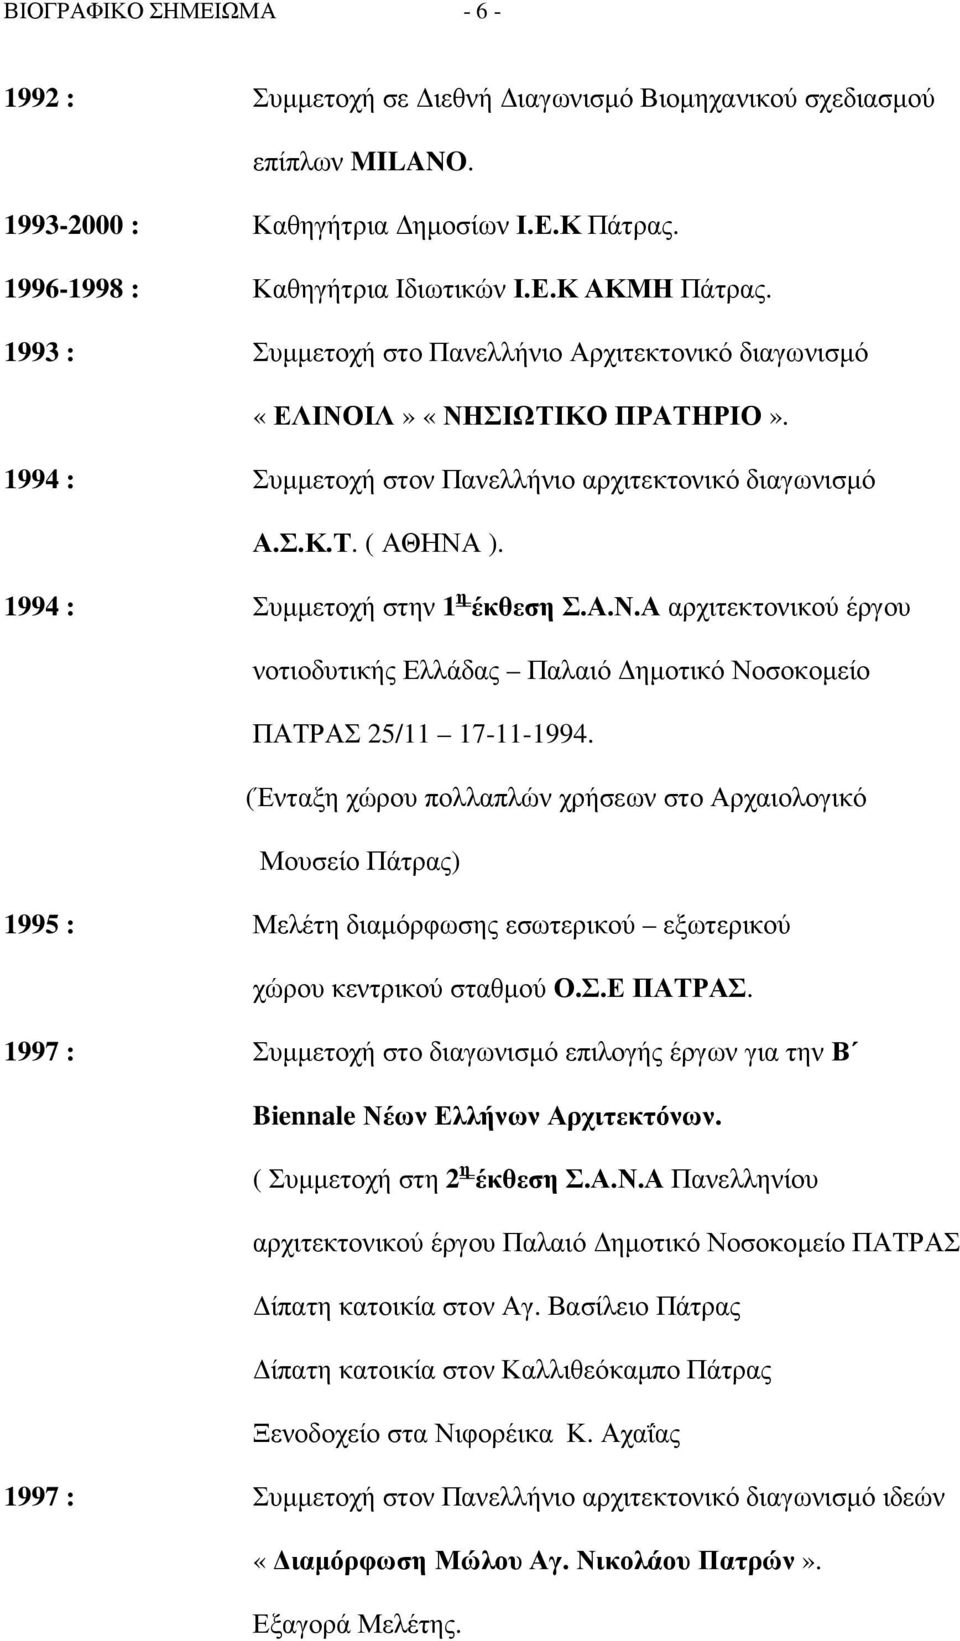 1994 : Συµµετοχή στην 1 η έκθεση Σ.Α.Ν.Α αρχιτεκτονικού έργου νοτιοδυτικής Ελλάδας Παλαιό ηµοτικό Νοσοκοµείο ΠΑΤΡΑΣ 25/11 17-11-1994.